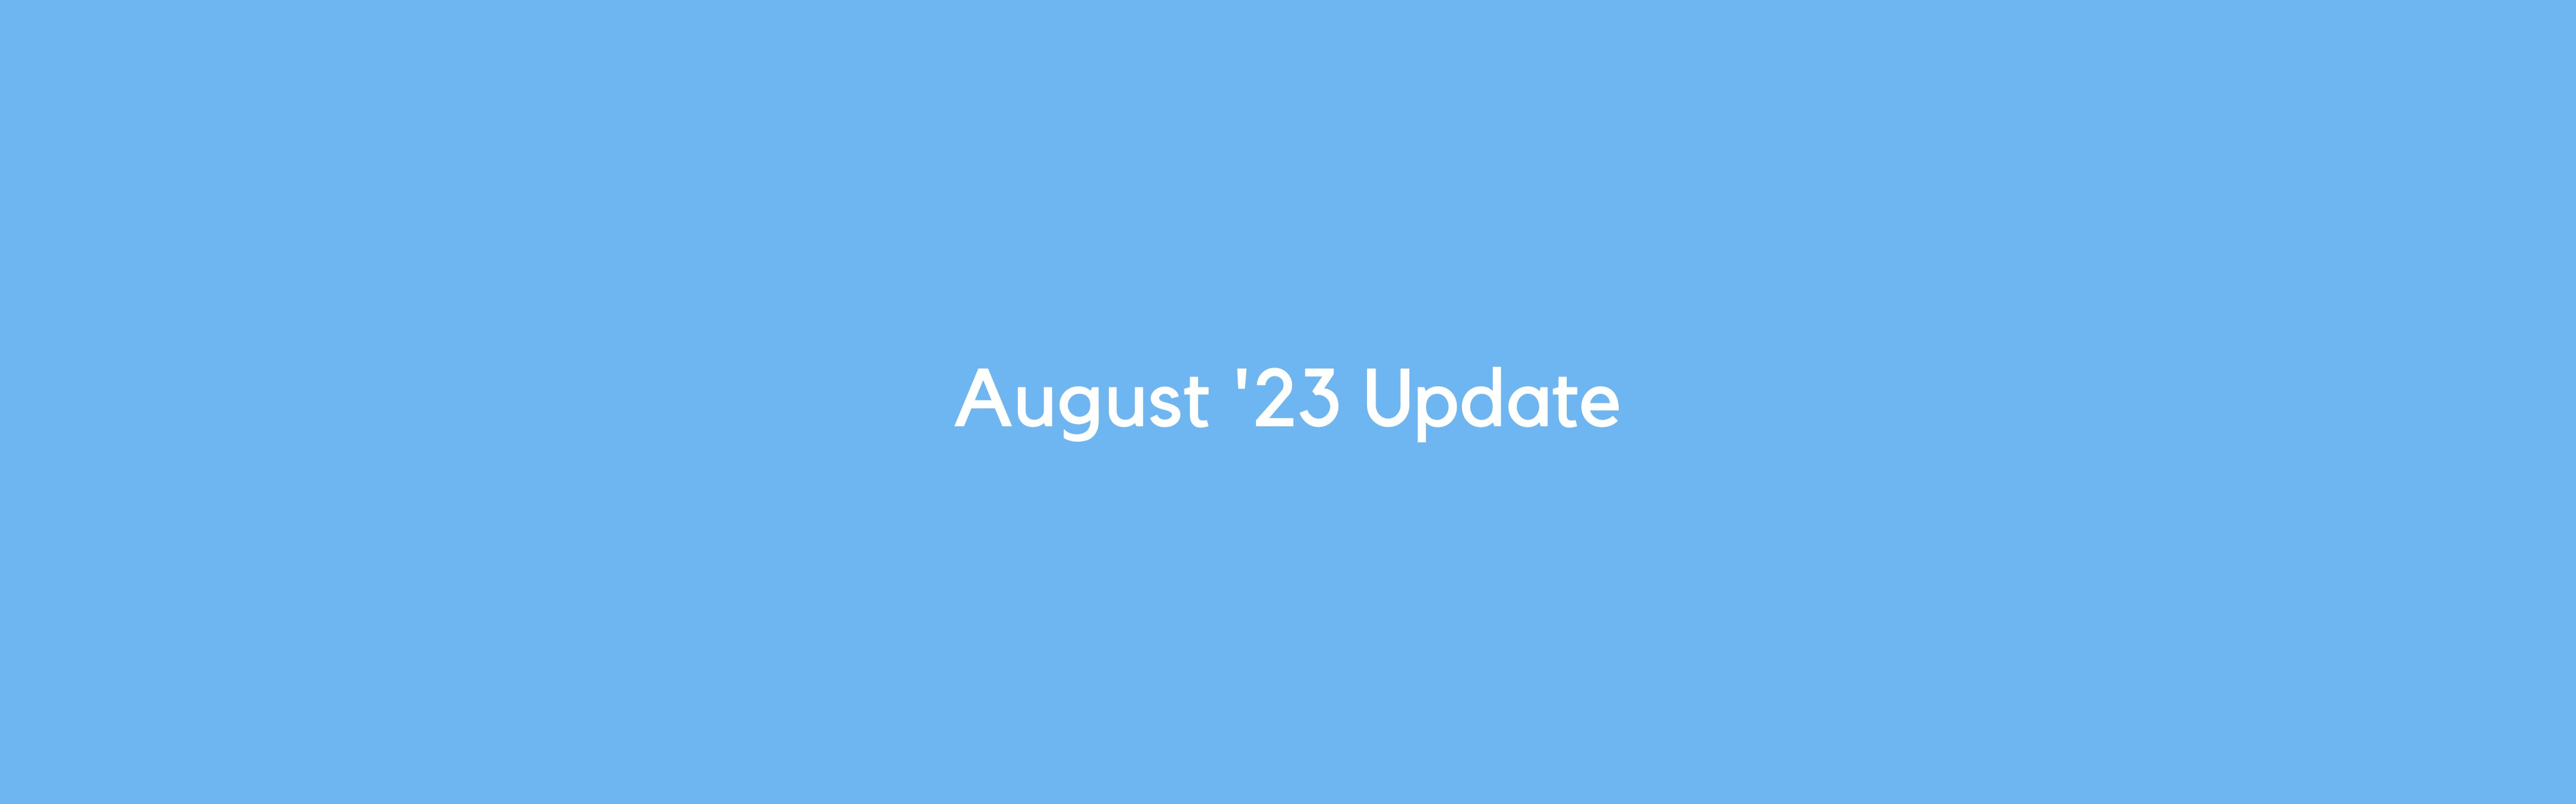 august-23-update